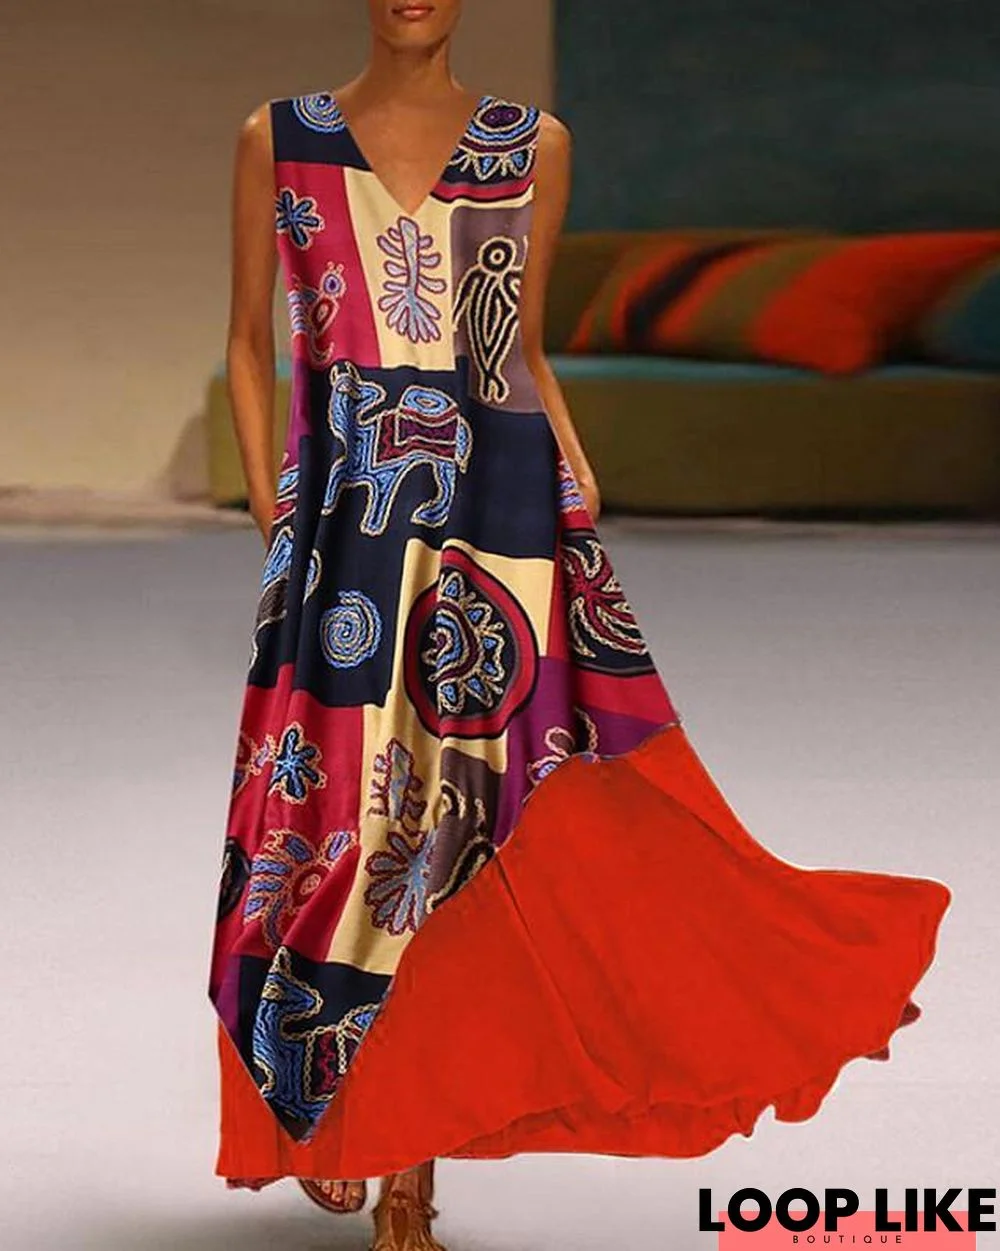 Women's A-Line Dress Maxi Long Dress Sleeveless Print Summer Casual Mumu Red Yellow